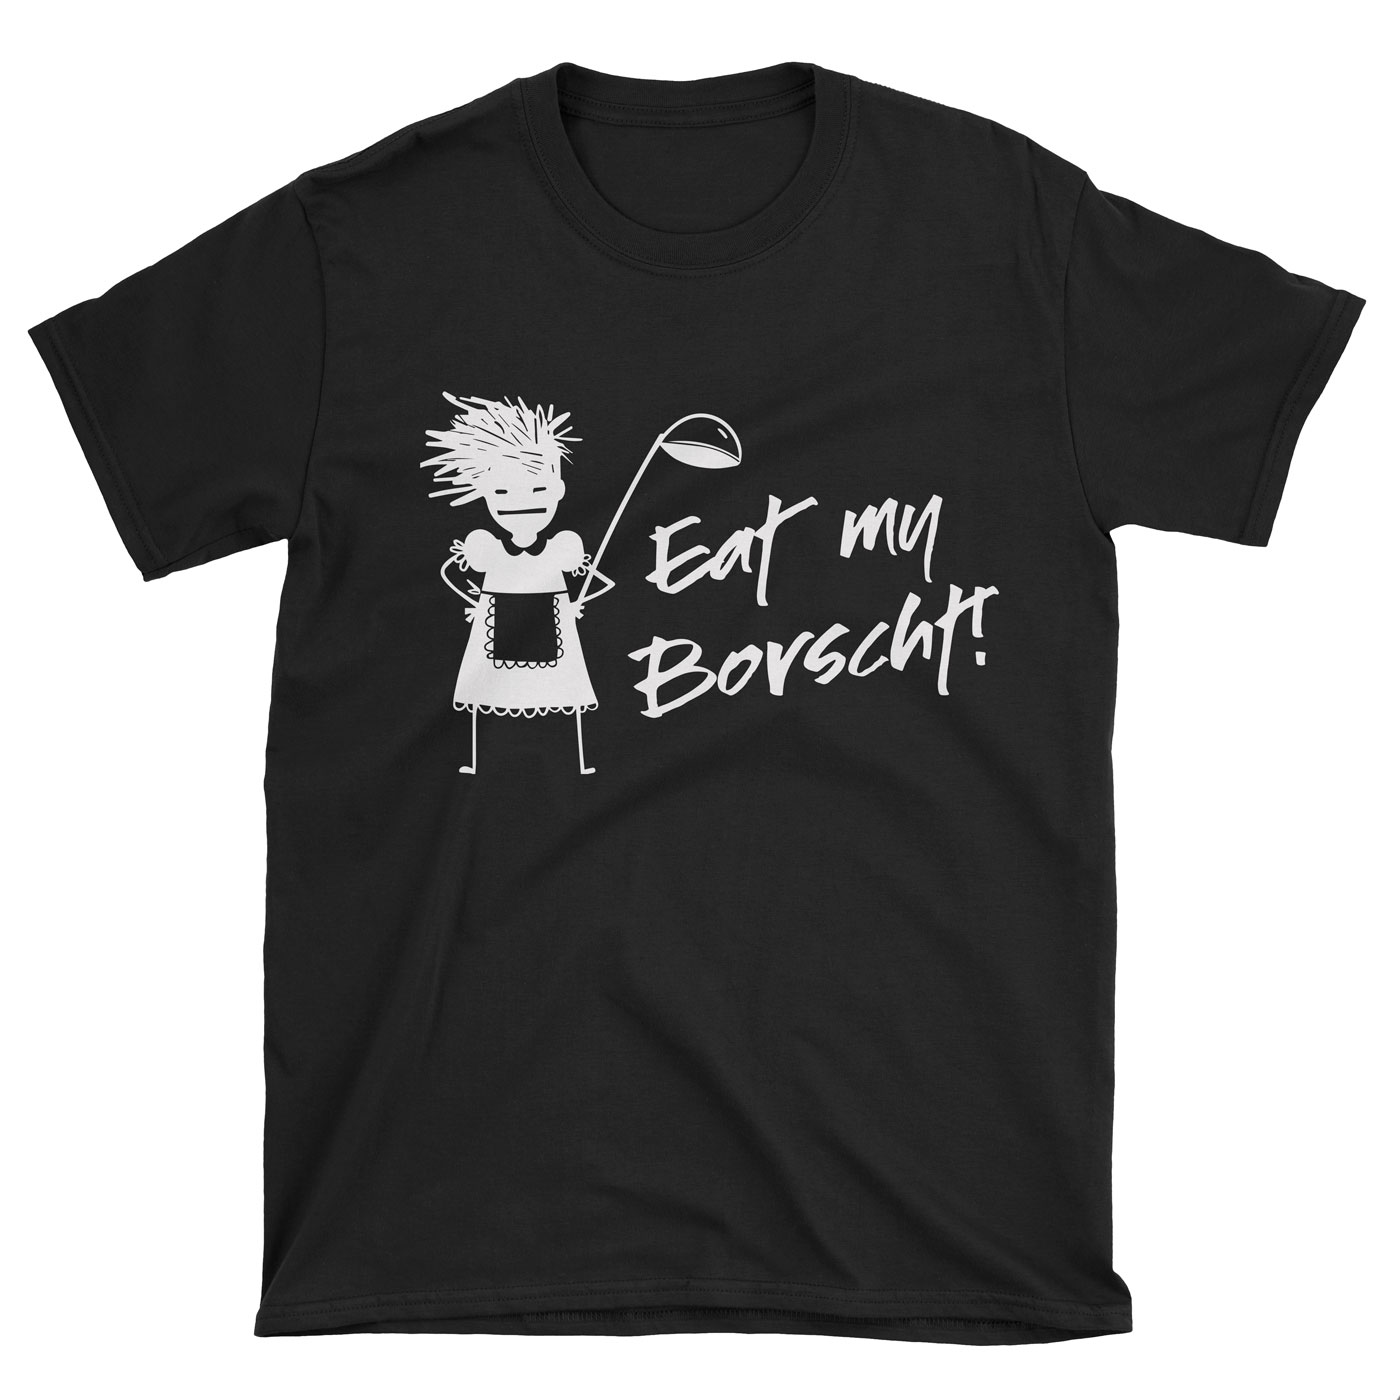 eat my borscht T-shirt